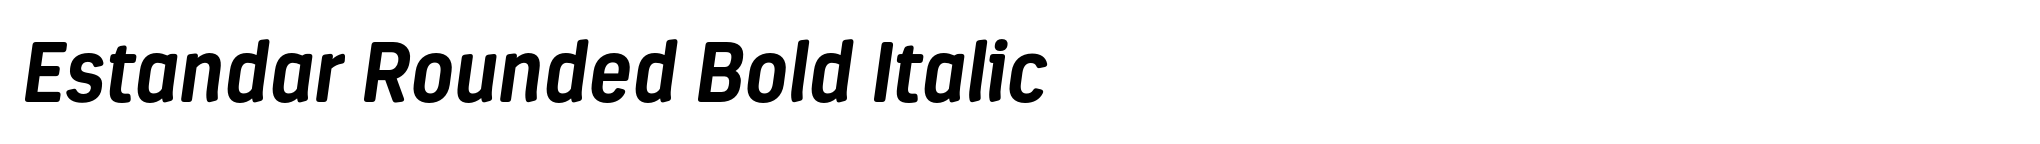 Estandar Rounded Bold Italic image